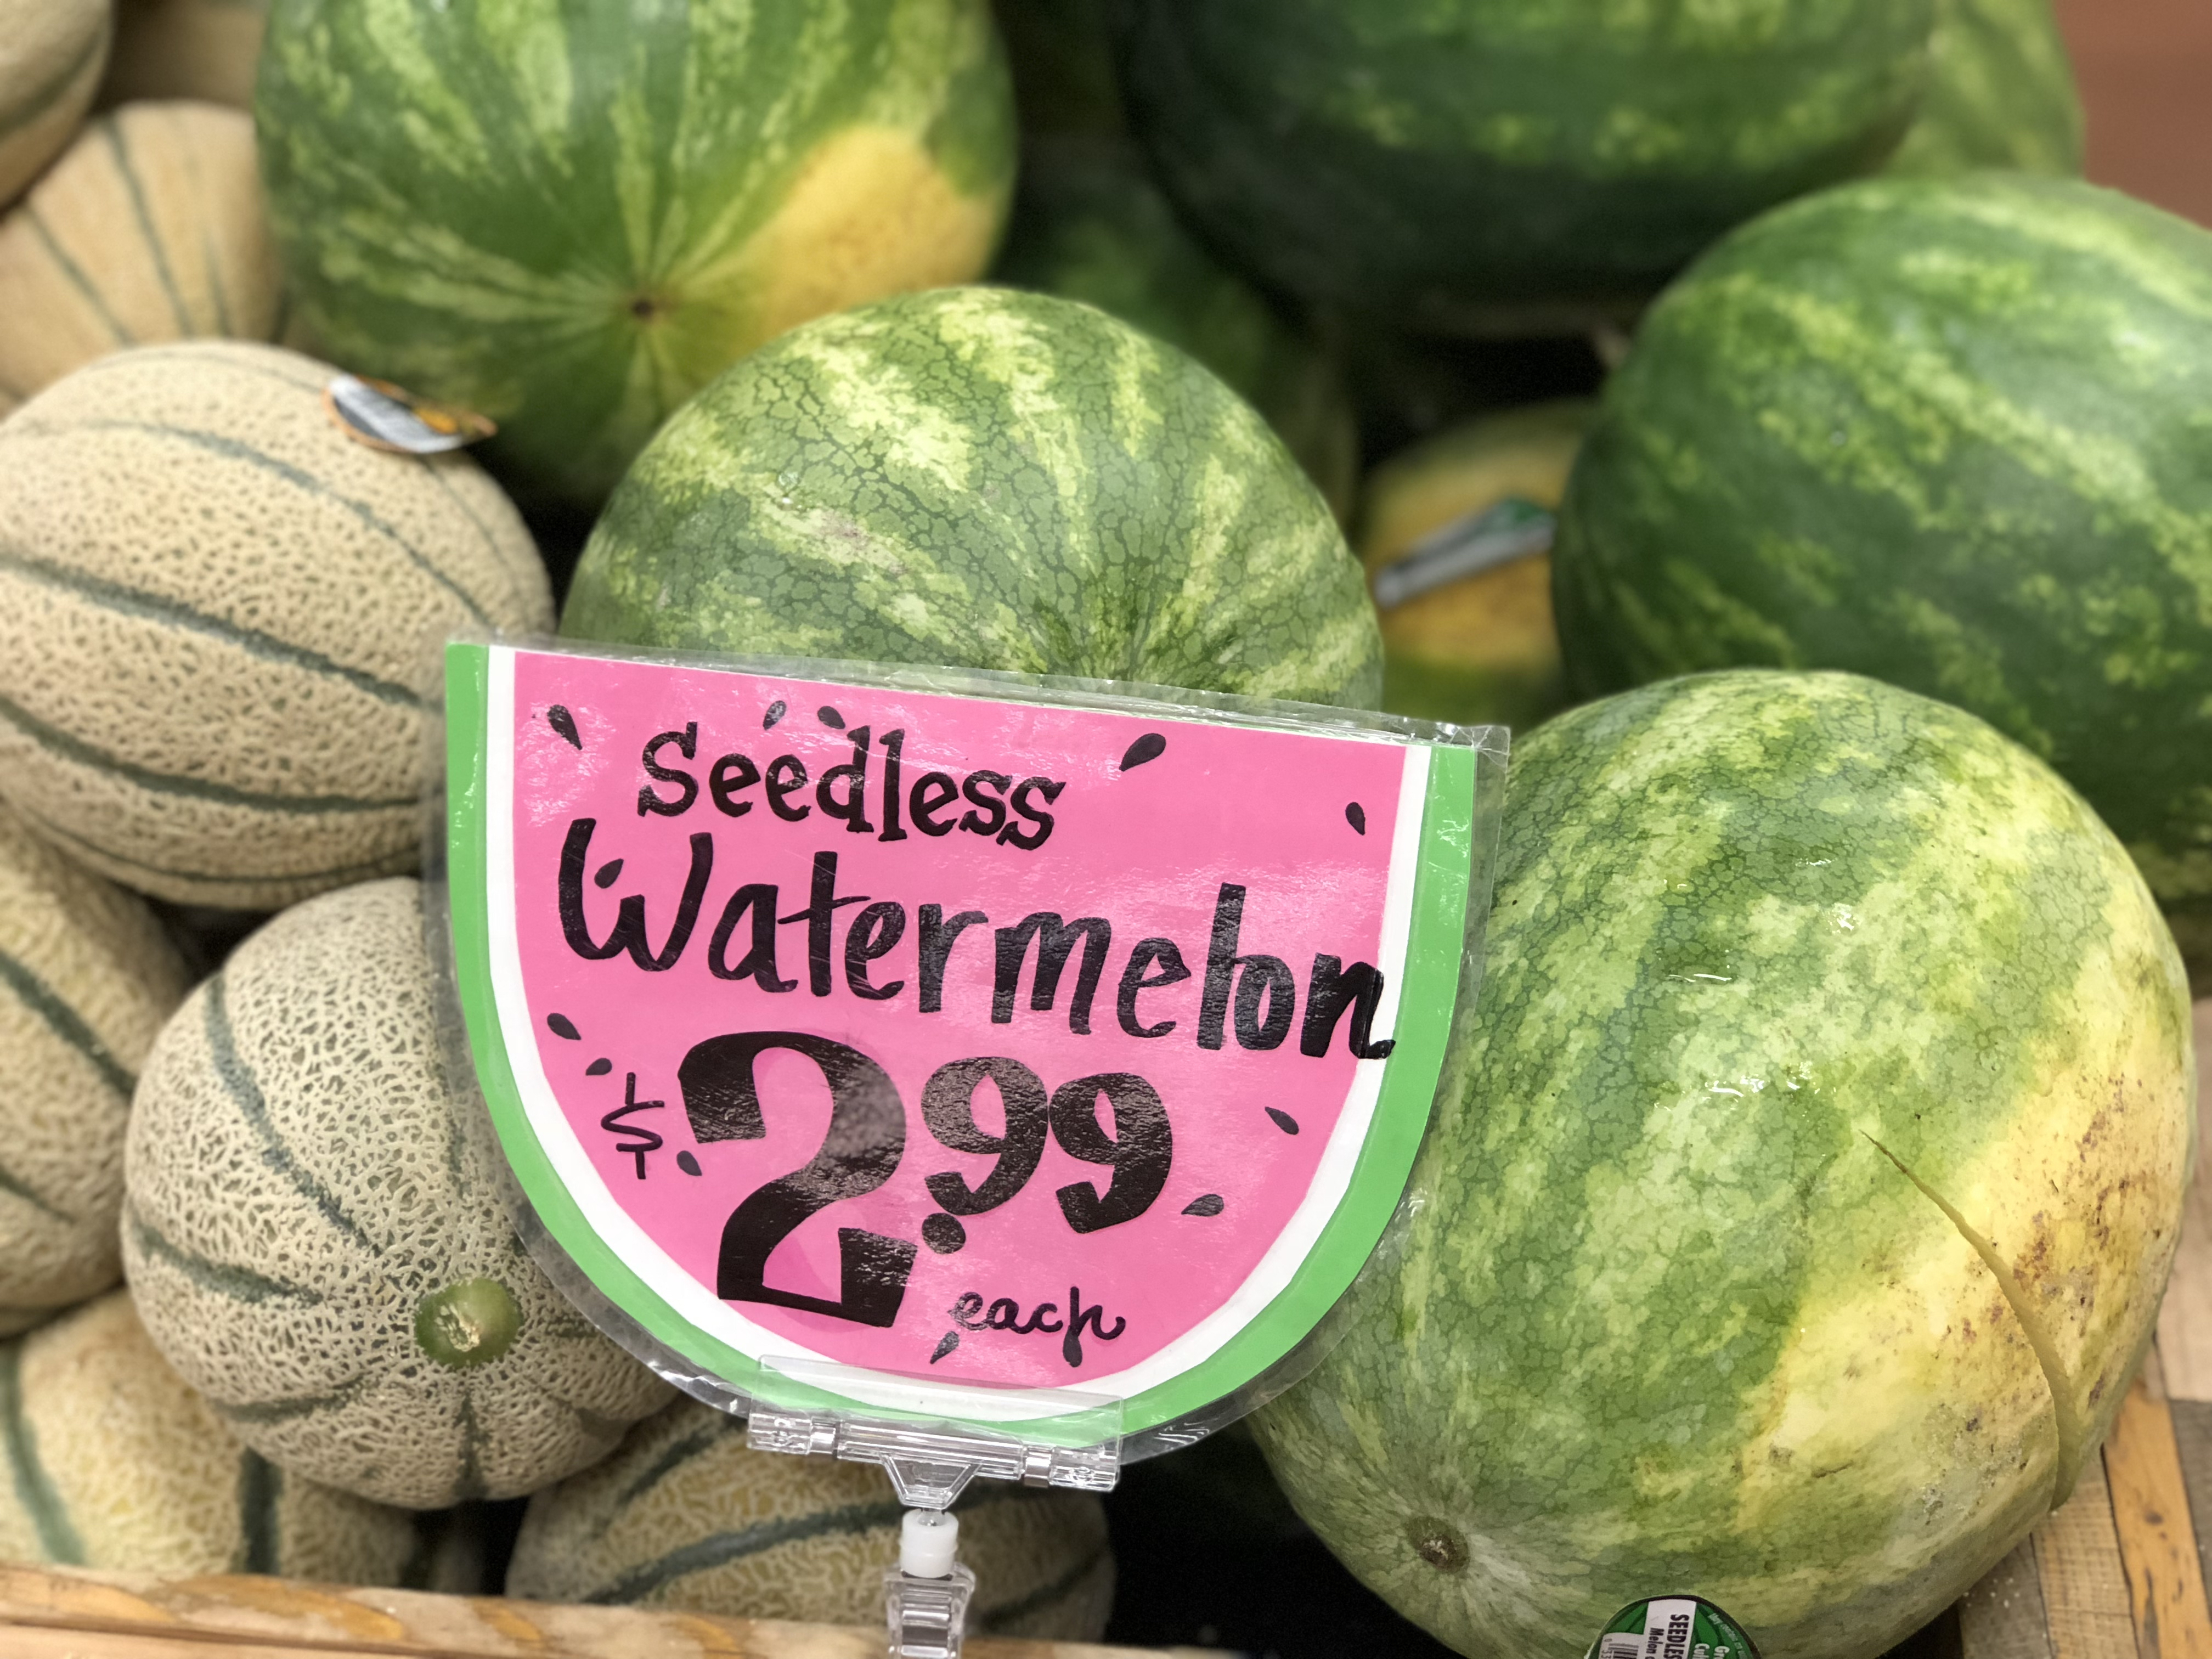 trader joes deals – seedless watermelon